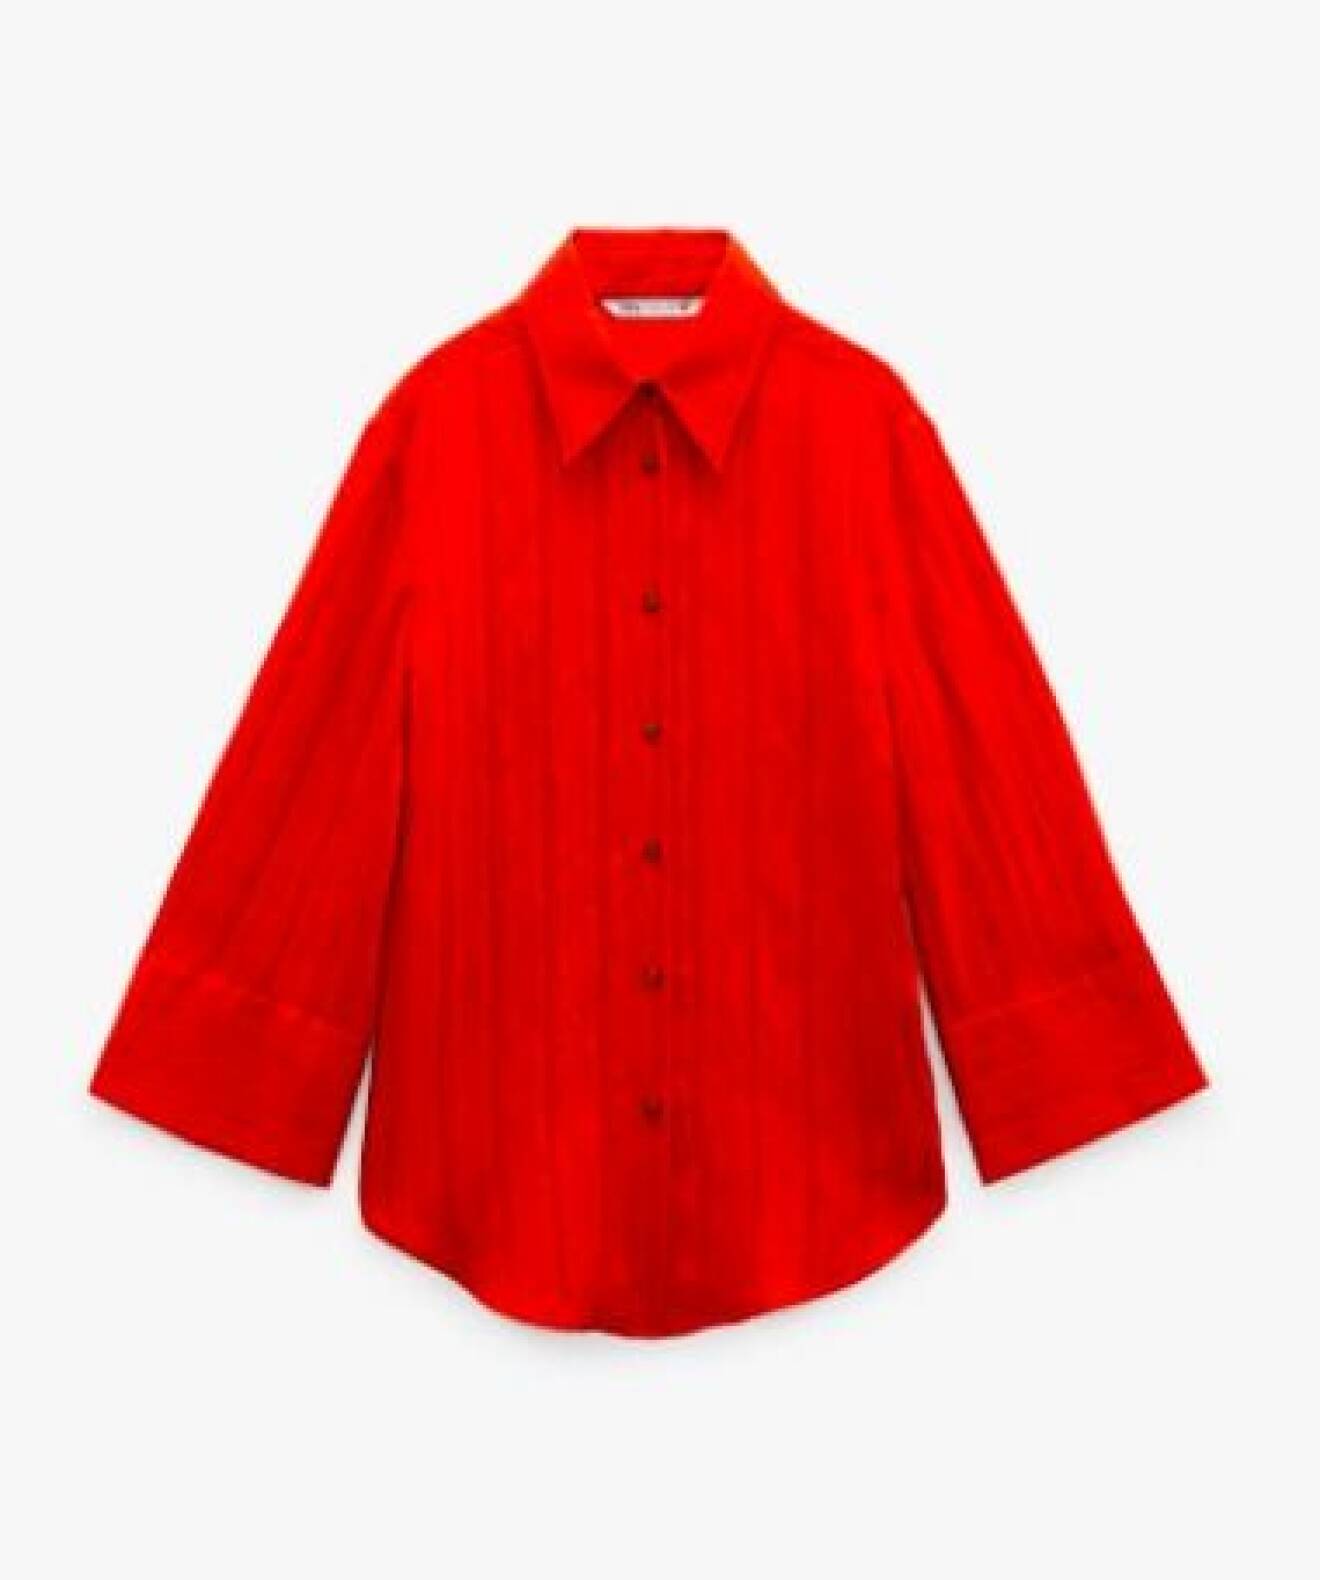 Röd skjorta med strukutr. Oversizad med långa vida ärmar. Skjorta från Zara.